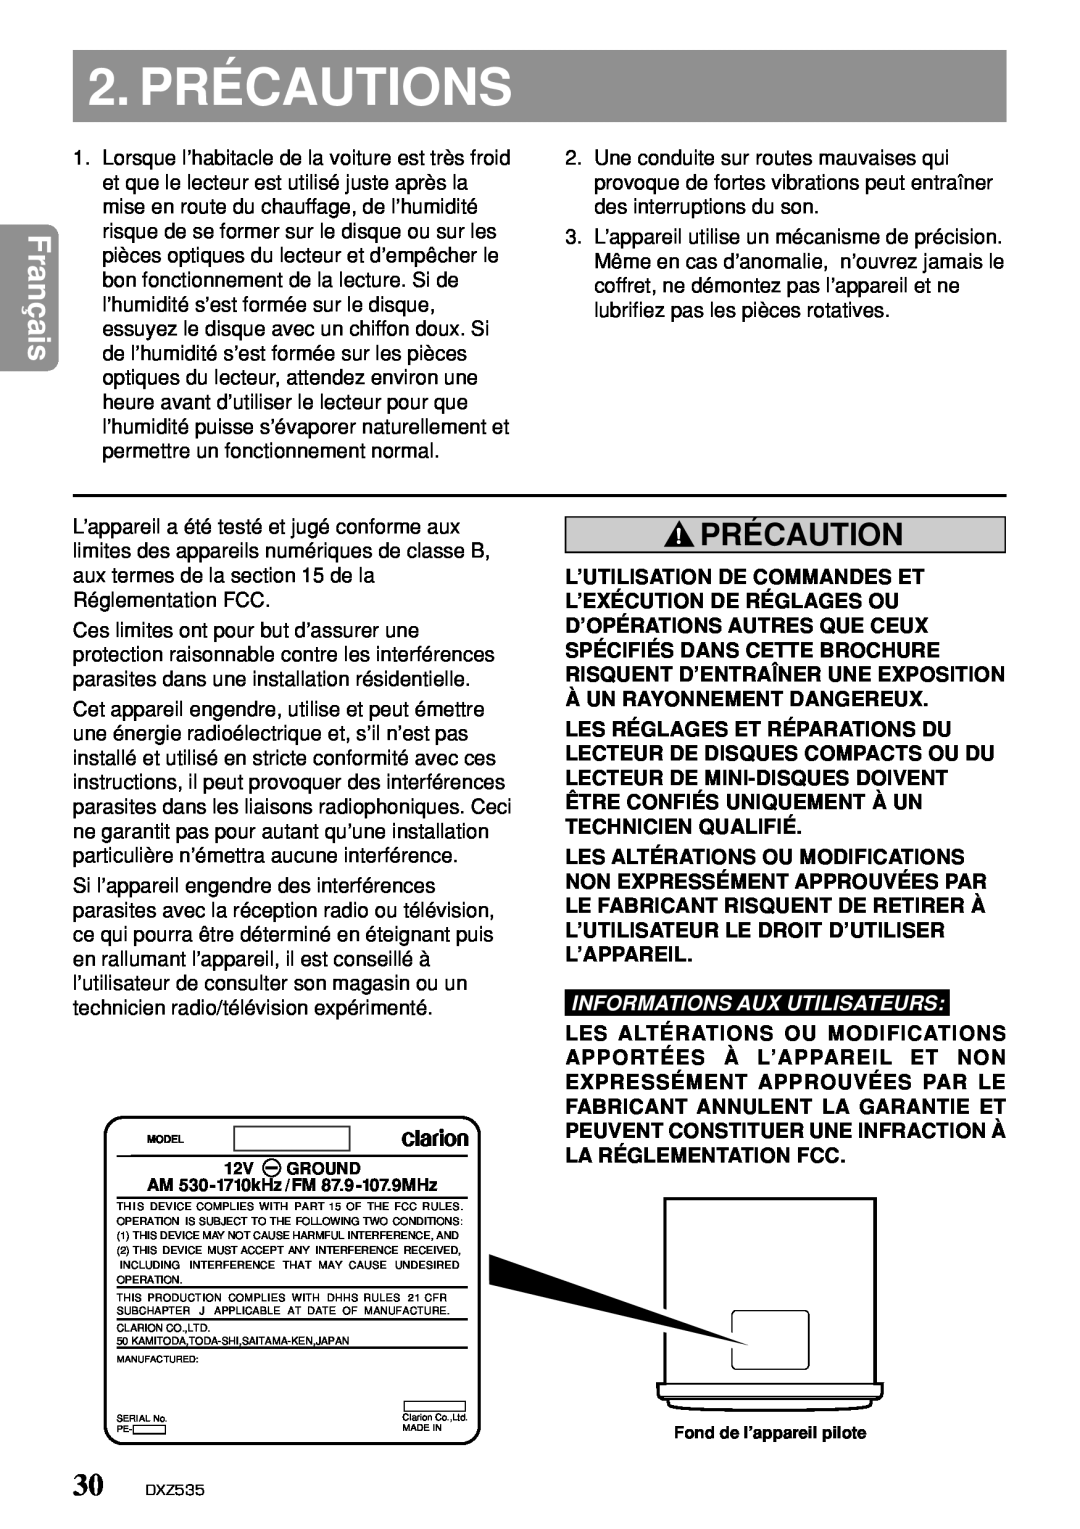 Clarion DXZ535 owner manual 2. PRÉCAUTIONS, Précaution, Informations Aux Utilisateurs 